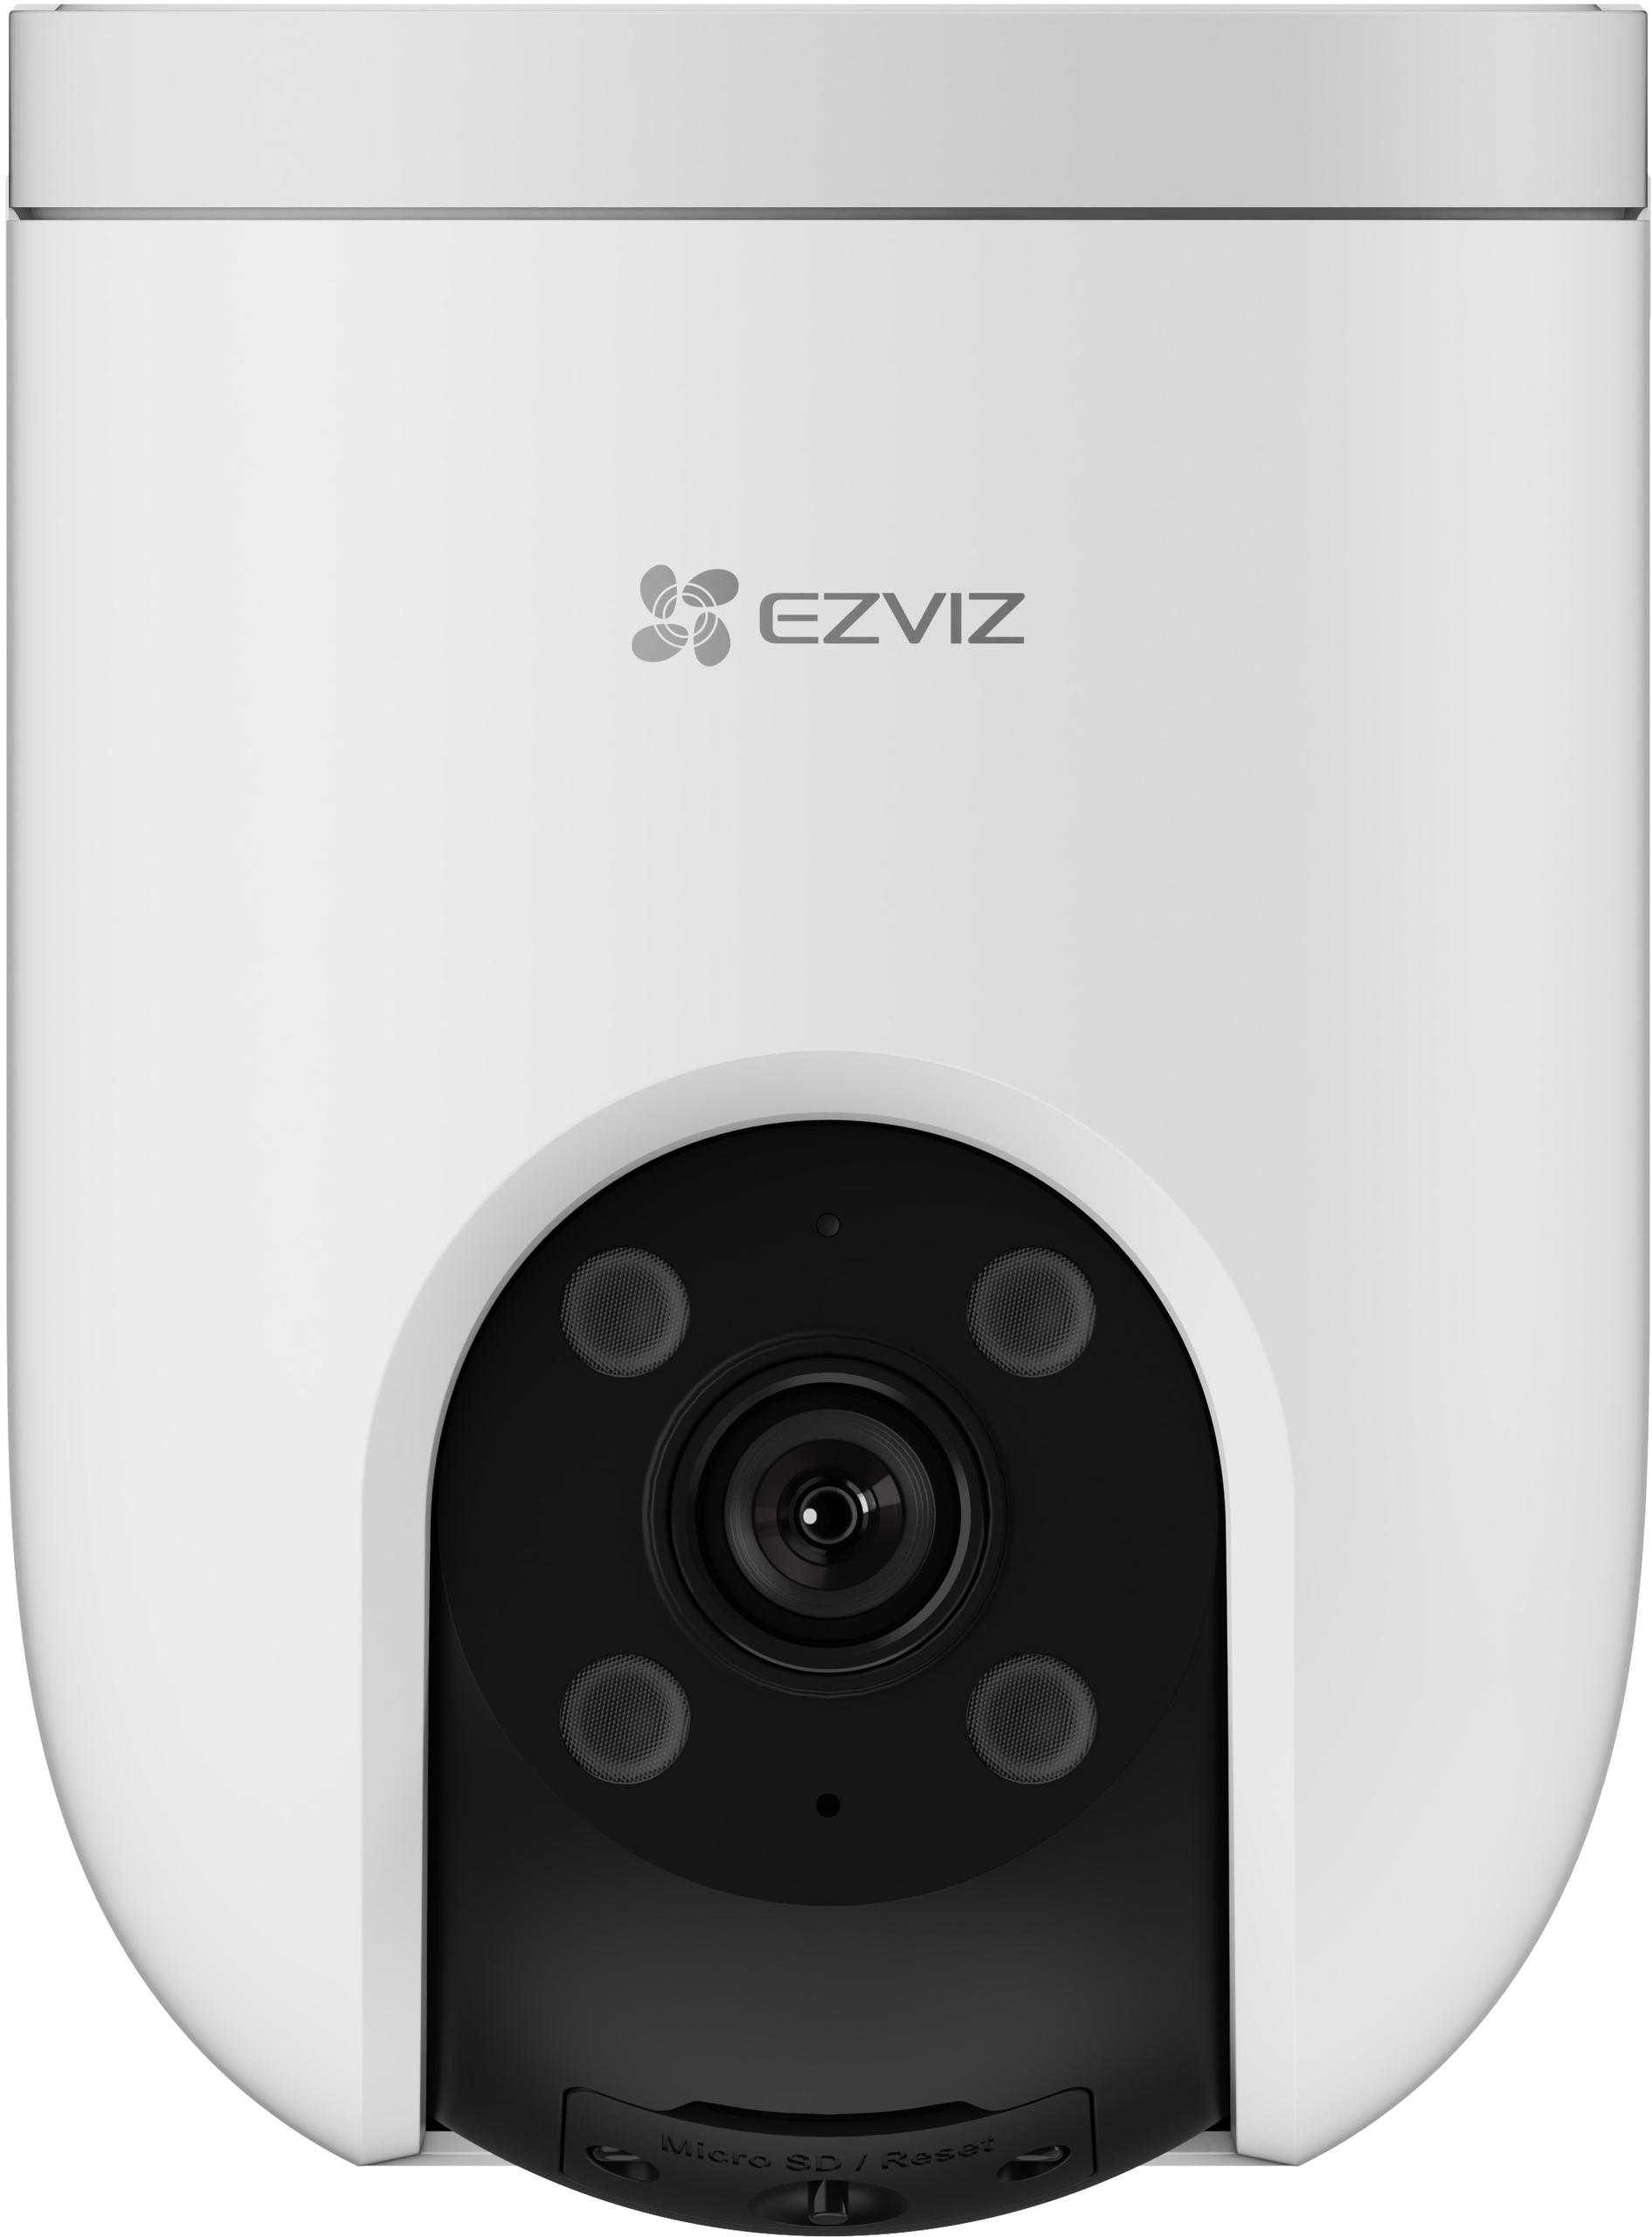 Kamera monitorująca 4G 2K 3MPx EZVIZ CS-H8c - specyfikacja i dane techniczne urządzenia zabezpieczającego: